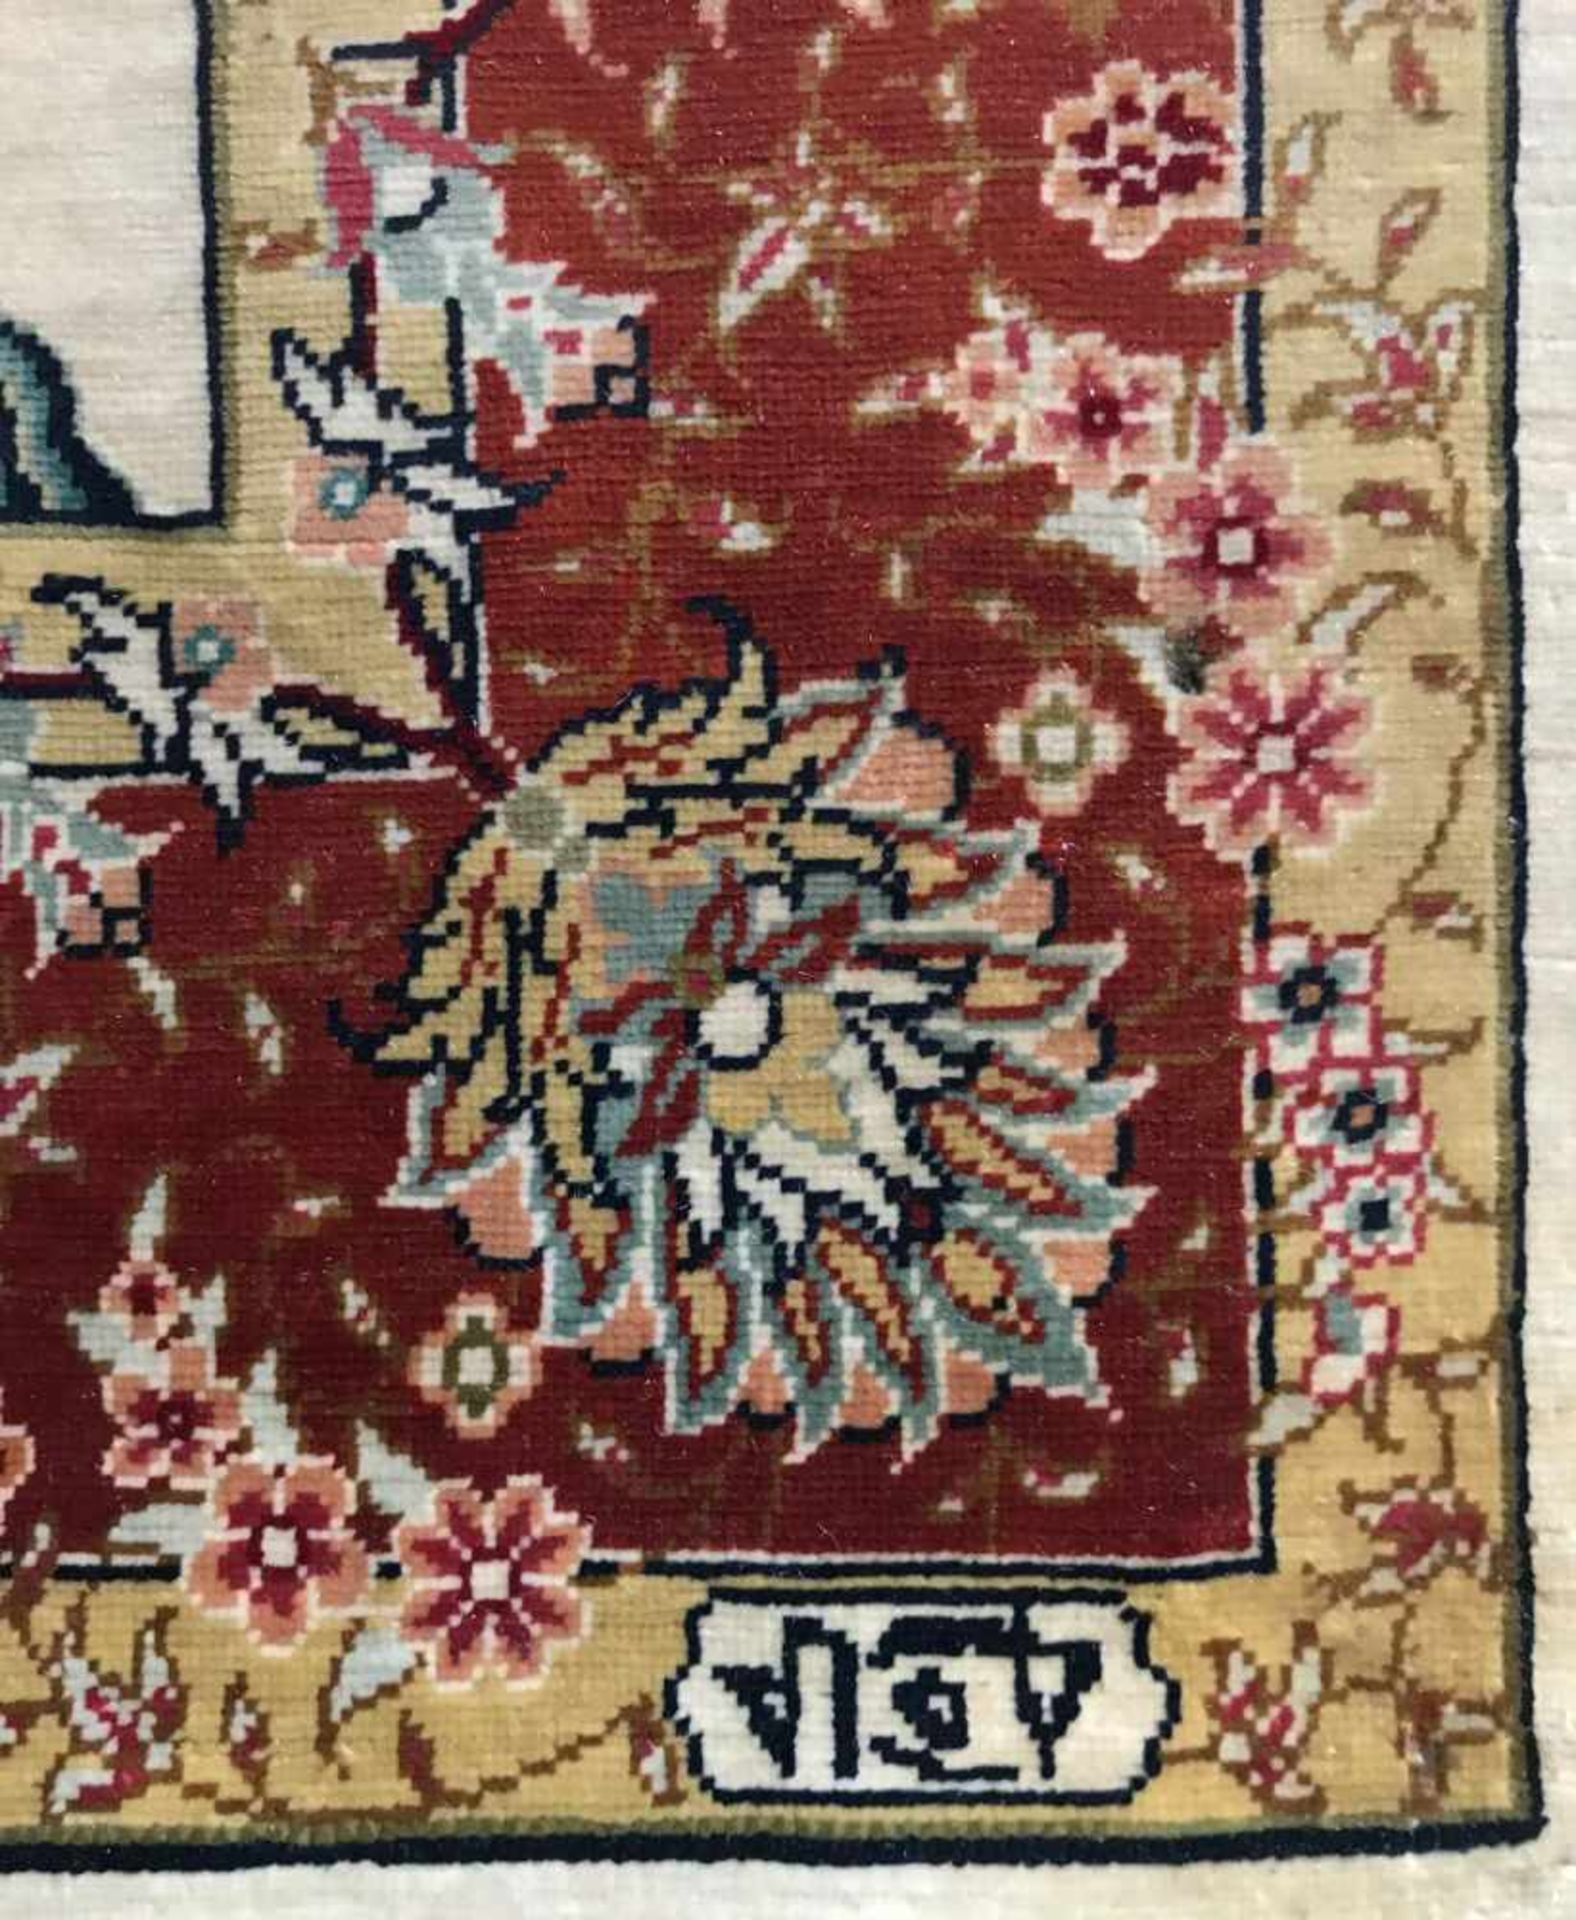 Türkischer Seidenteppich, feinste Knüpfung, signiert, Altersspuren, 66 x 46 cm - Bild 3 aus 3